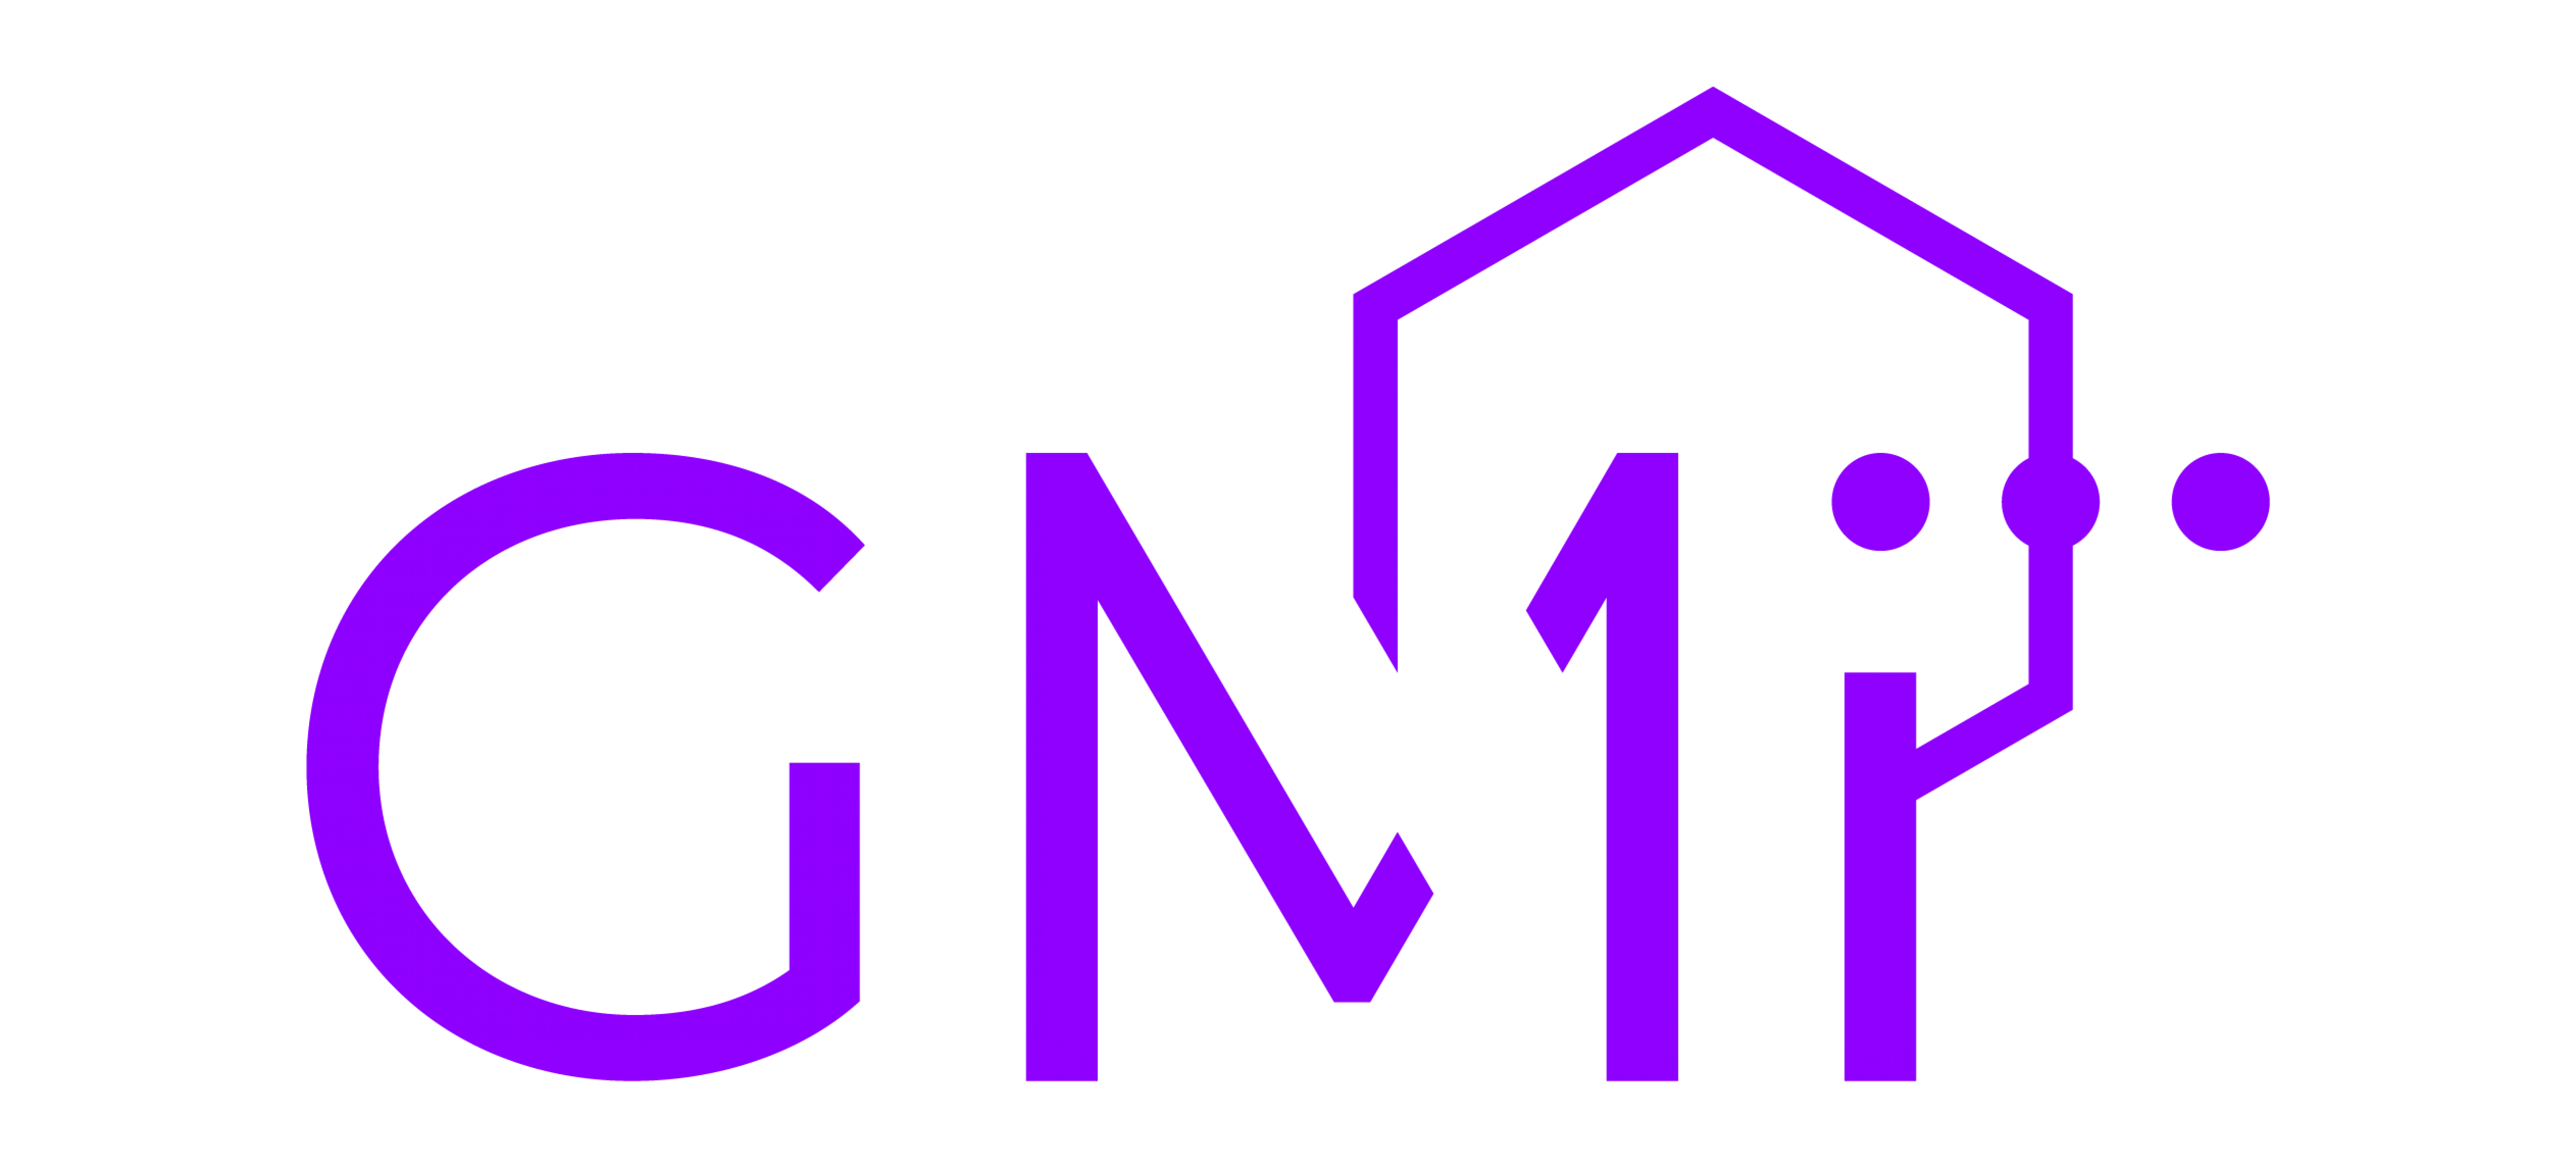 Logo GMI